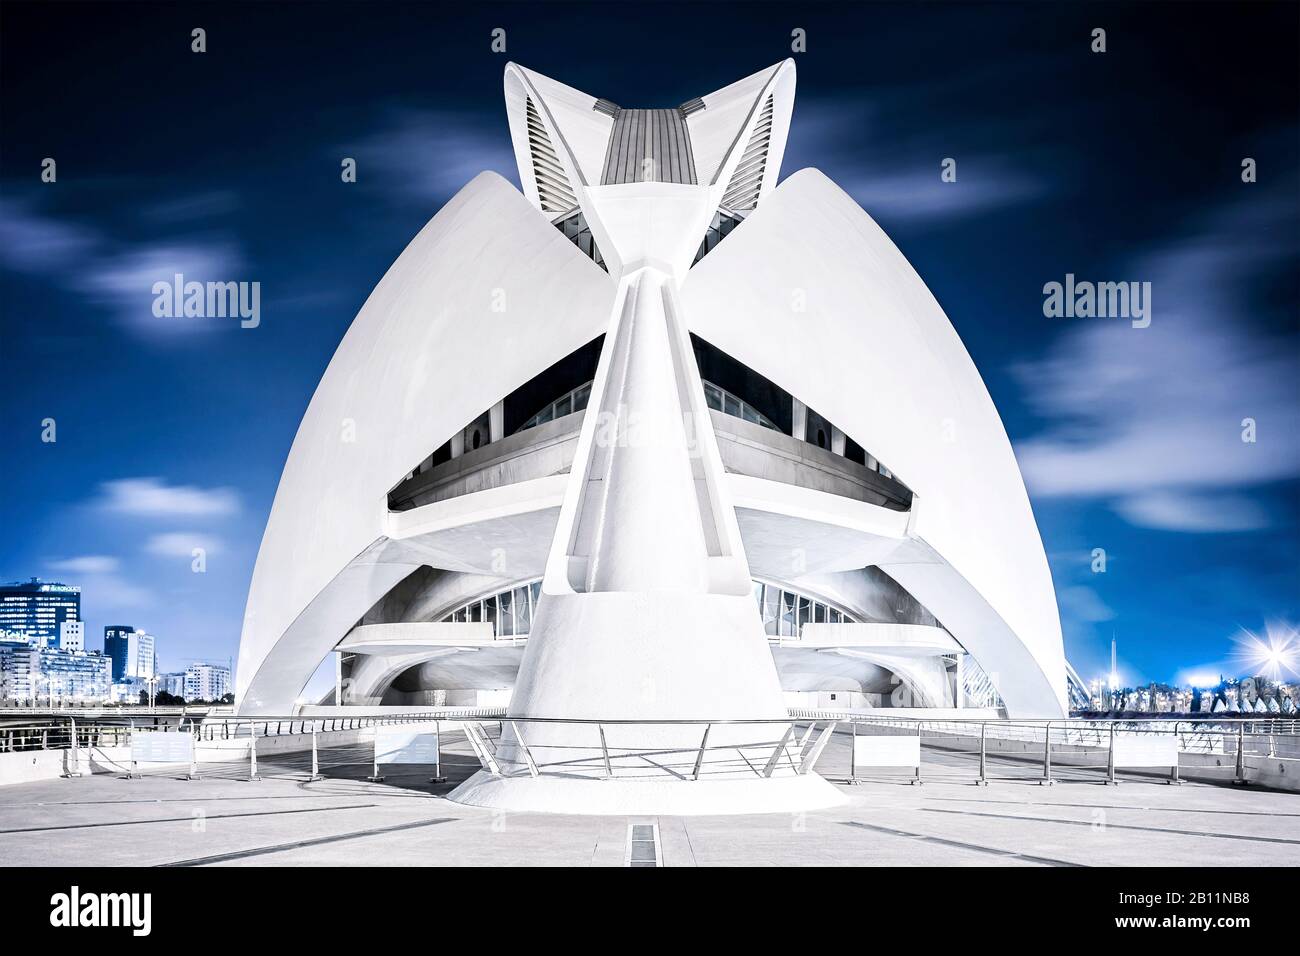 Opera house Palau de les Arts Reina Sofia, architect Santiago Calatrava, Ciudad de las Artes y de las Ciencias, Valencia, Spain Stock Photo